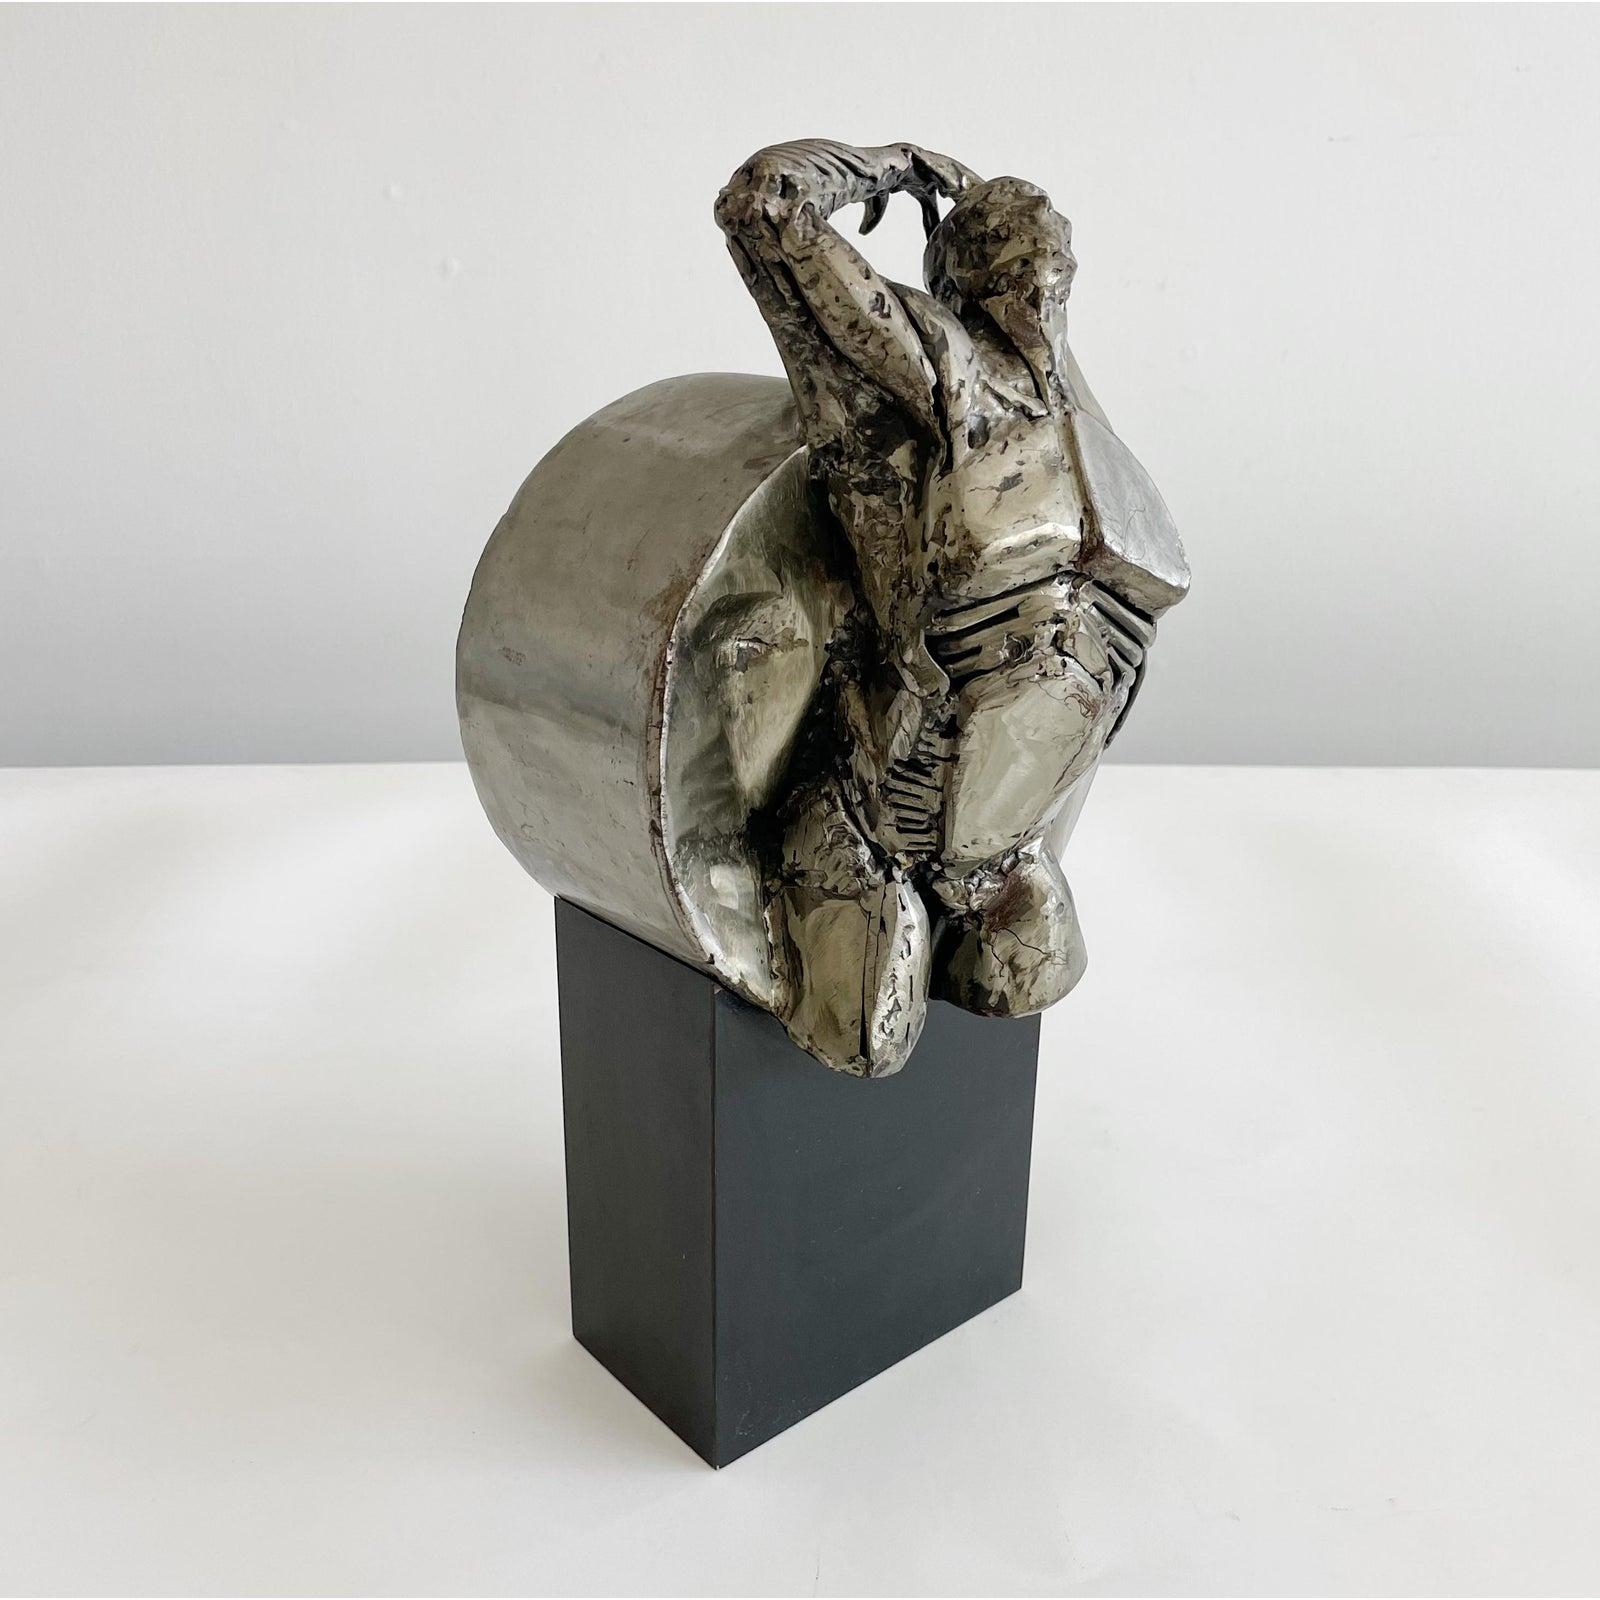 Figurale Skulptur des Künstlers Ted Gall aus Stahl, befestigt auf einem Sockel aus schwarzem Schichtholz. Unterschrieben.

Theodore T. Gall begann seine künstlerische Laufbahn Mitte der sechziger Jahre als Animator für Lehrfilme und erweiterte